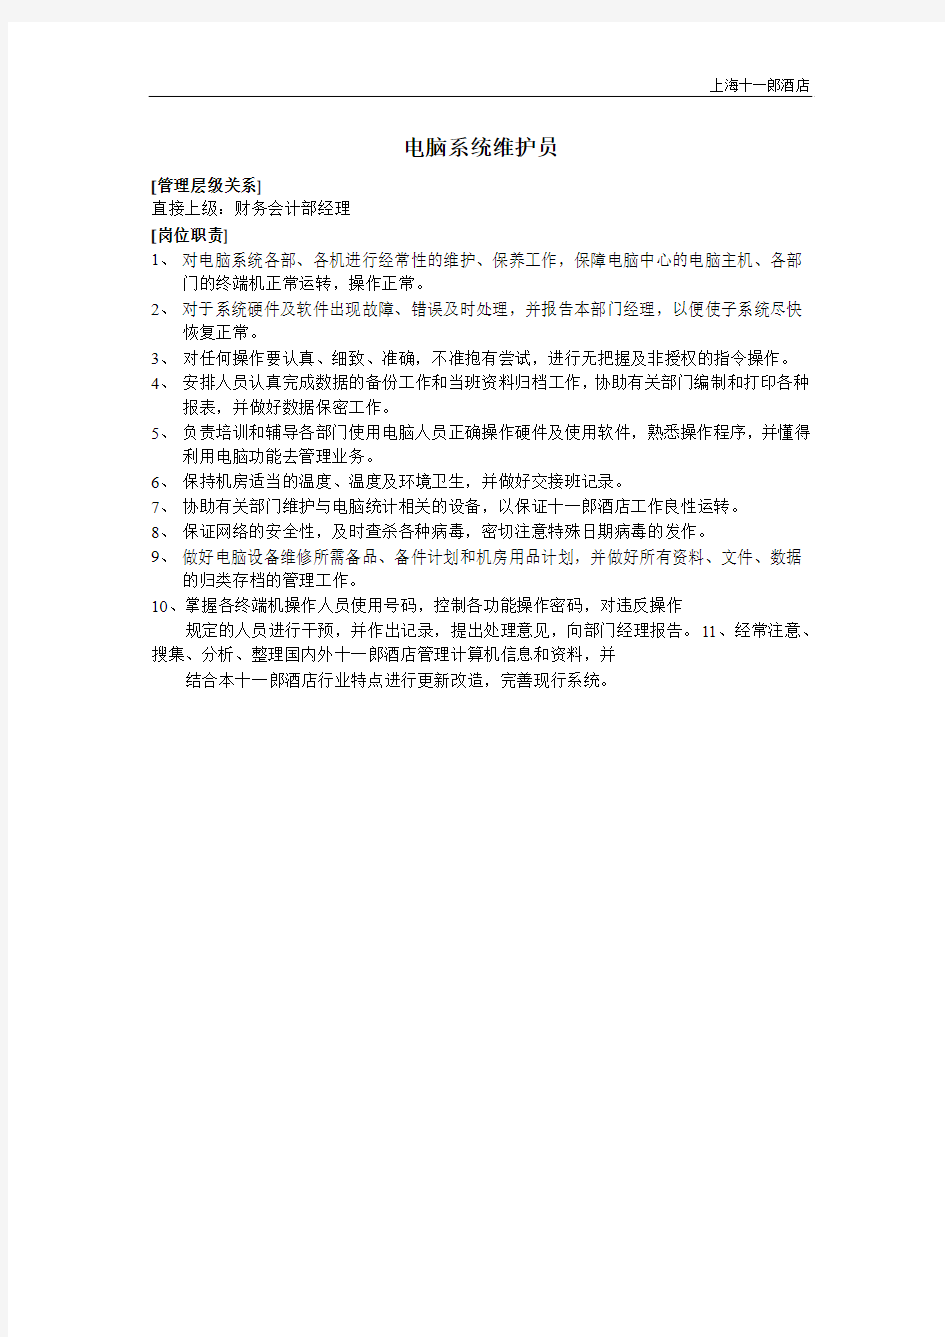 上海十一郎酒店电脑系统维护员岗位职责